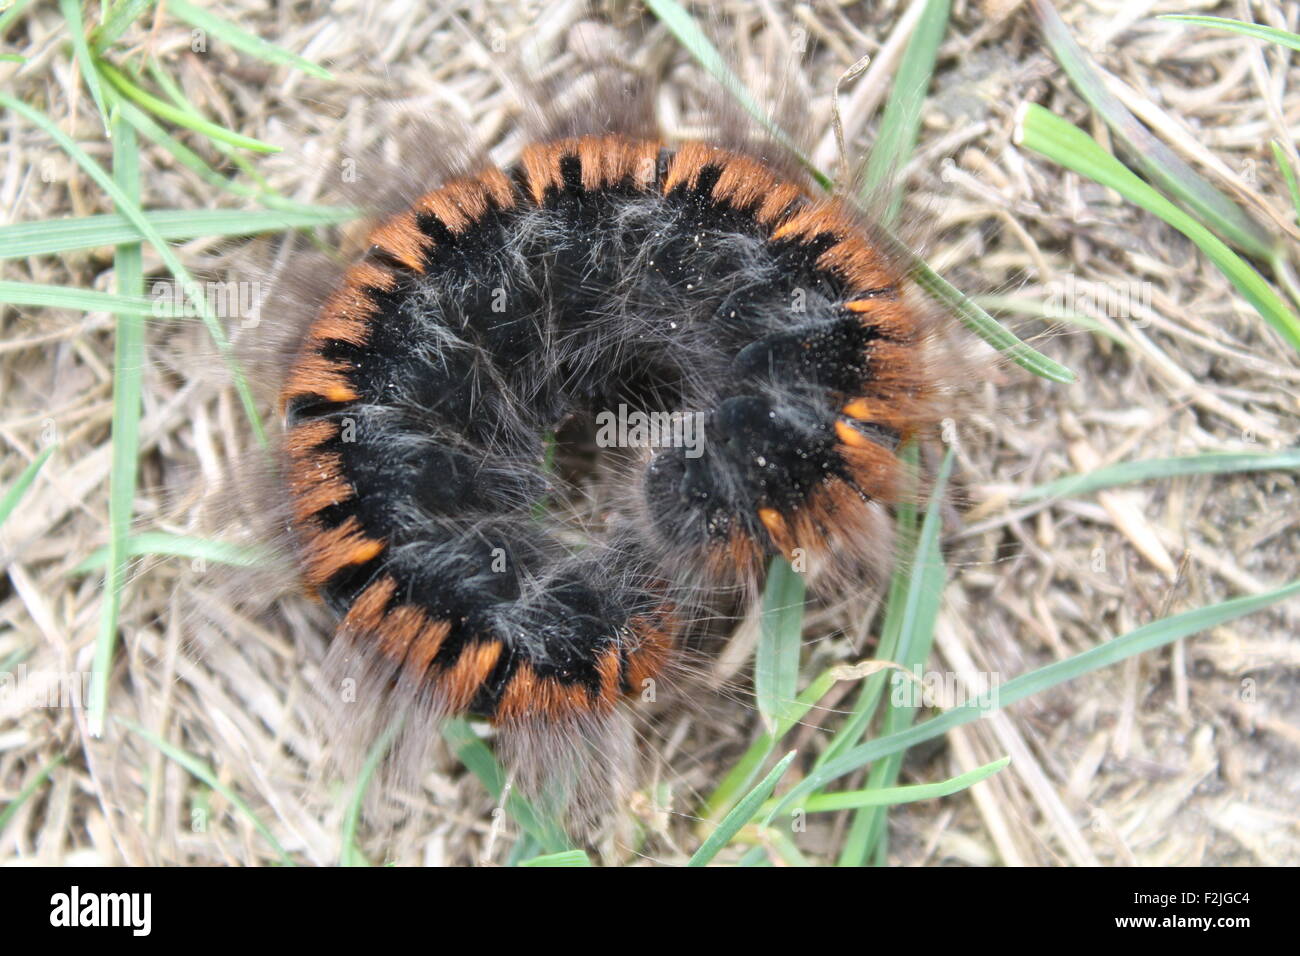 Gran pelaje negro caterpillar con líneas de color naranja en la espalda yacía en curl Foto de stock